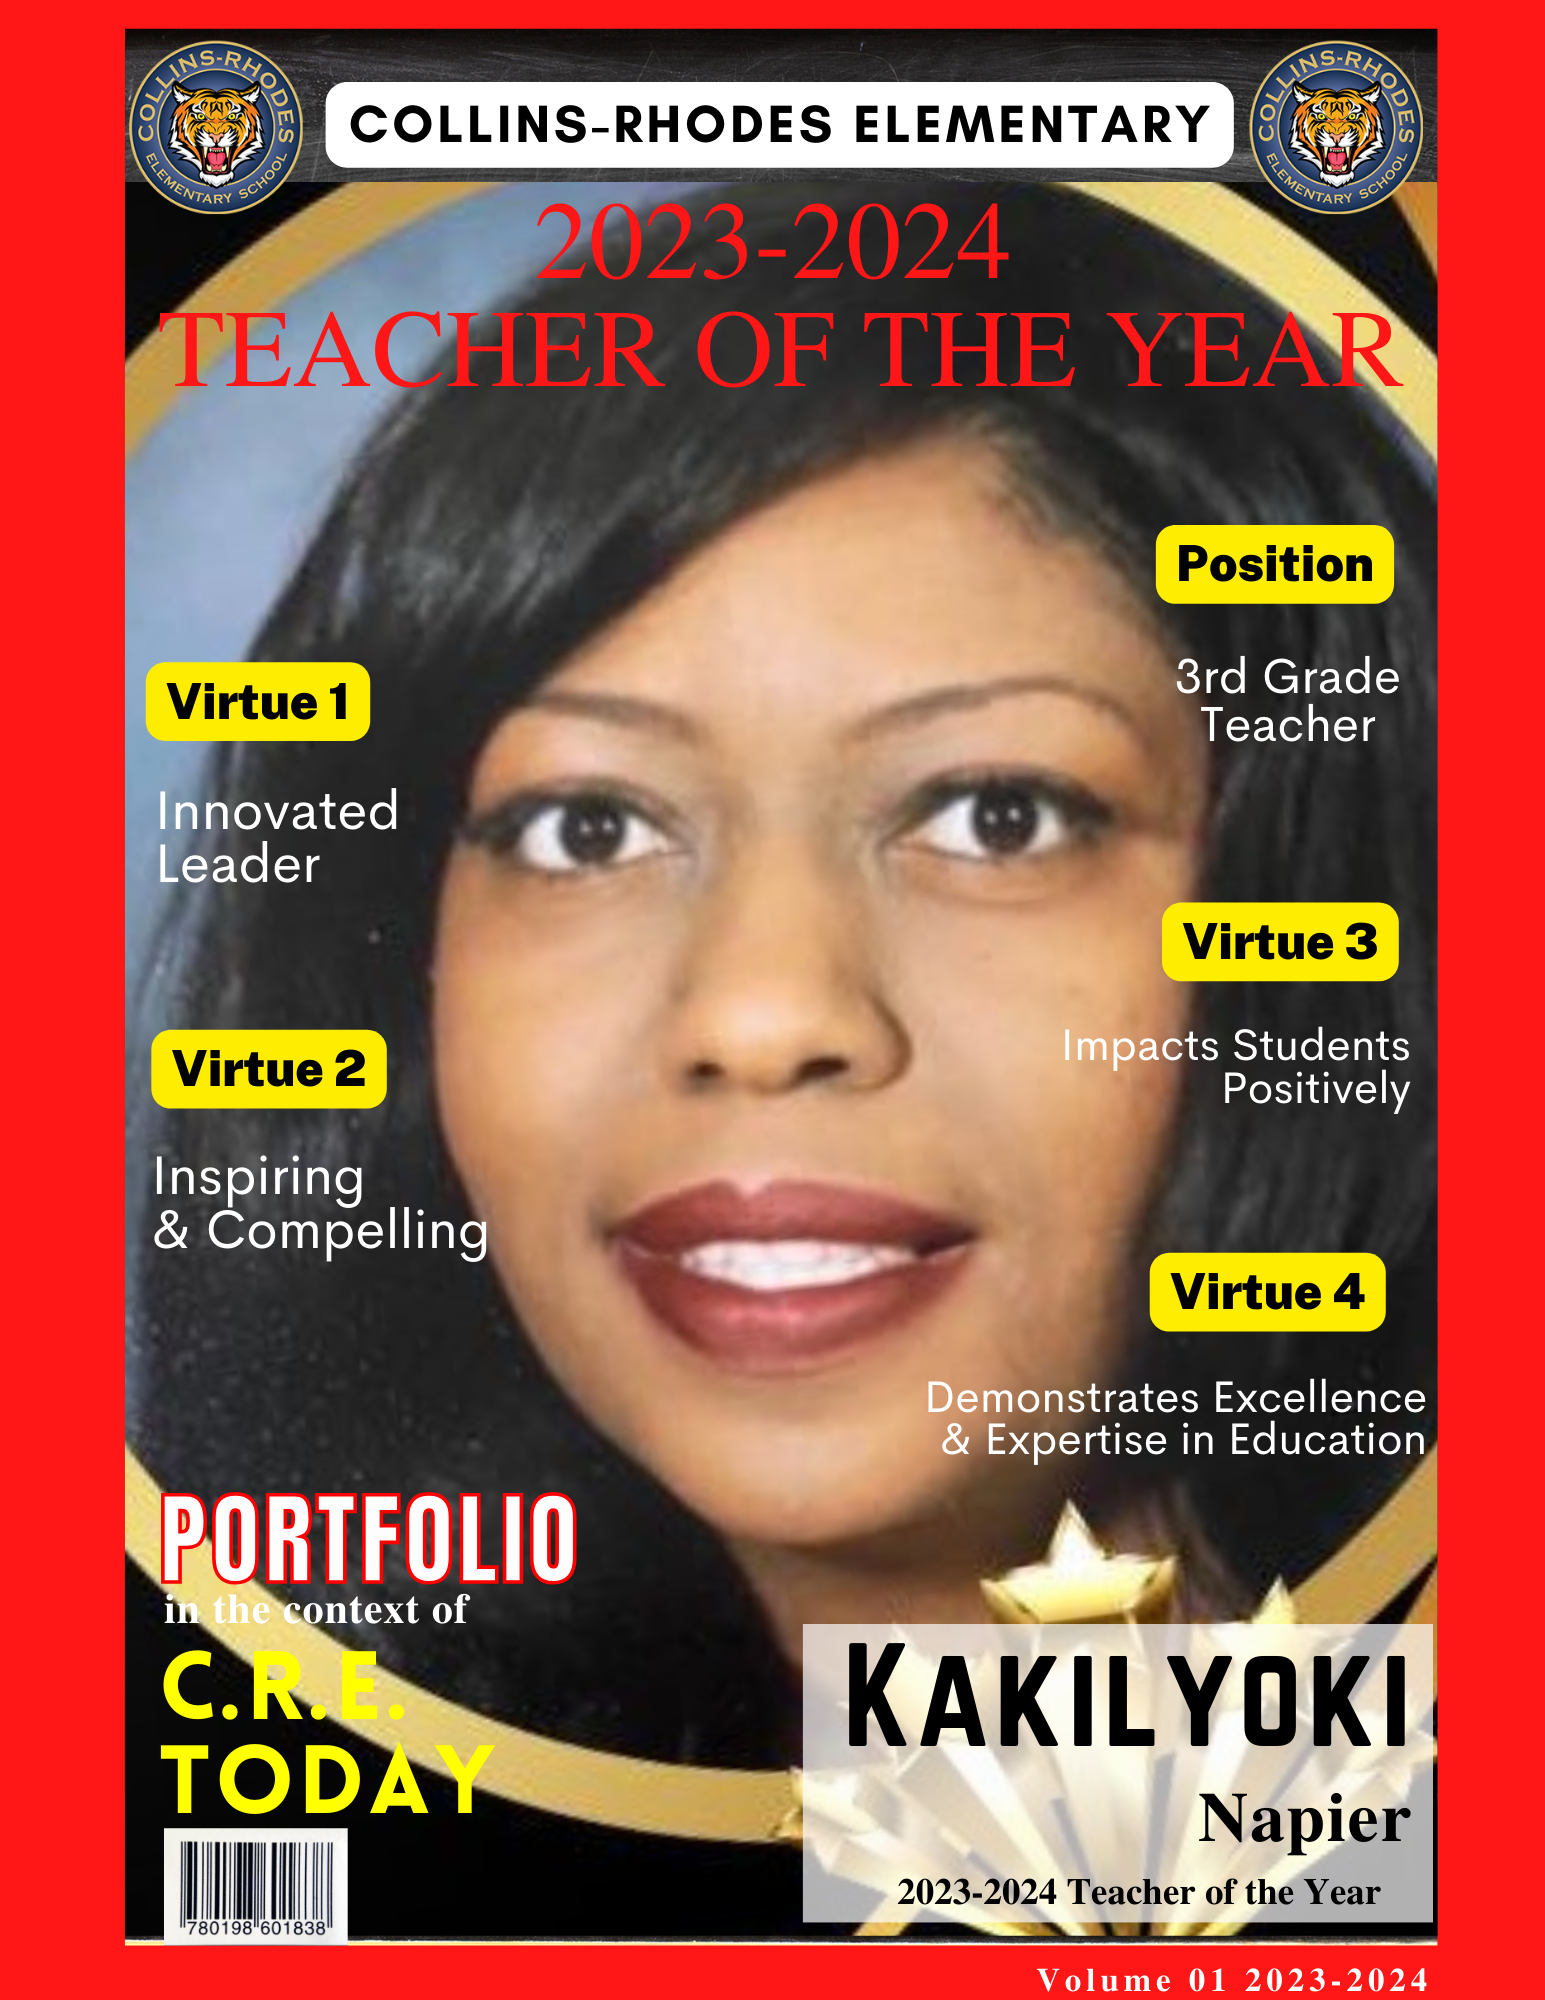 Teacher of the Year - Kakilyoki Napier